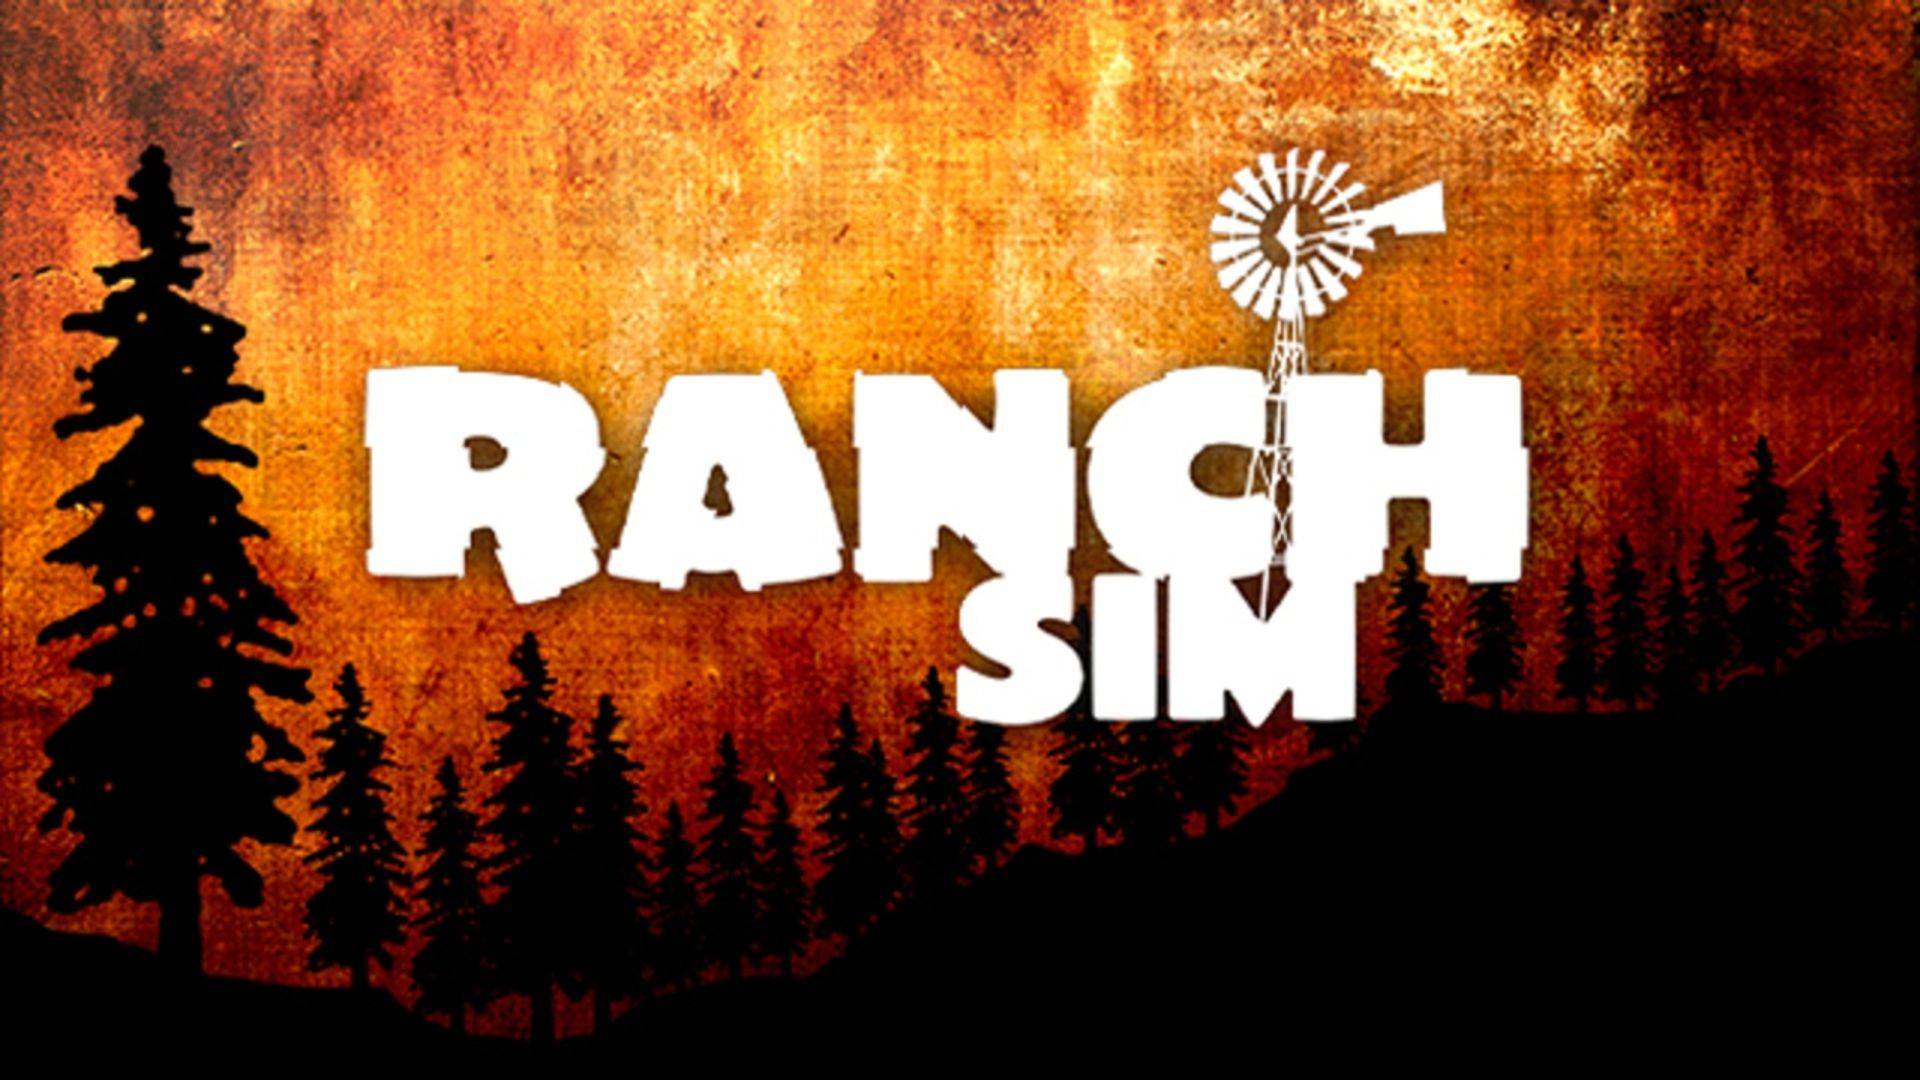 Ranch sim! Смотрим симулятор для многопользовательской игры на ферме.